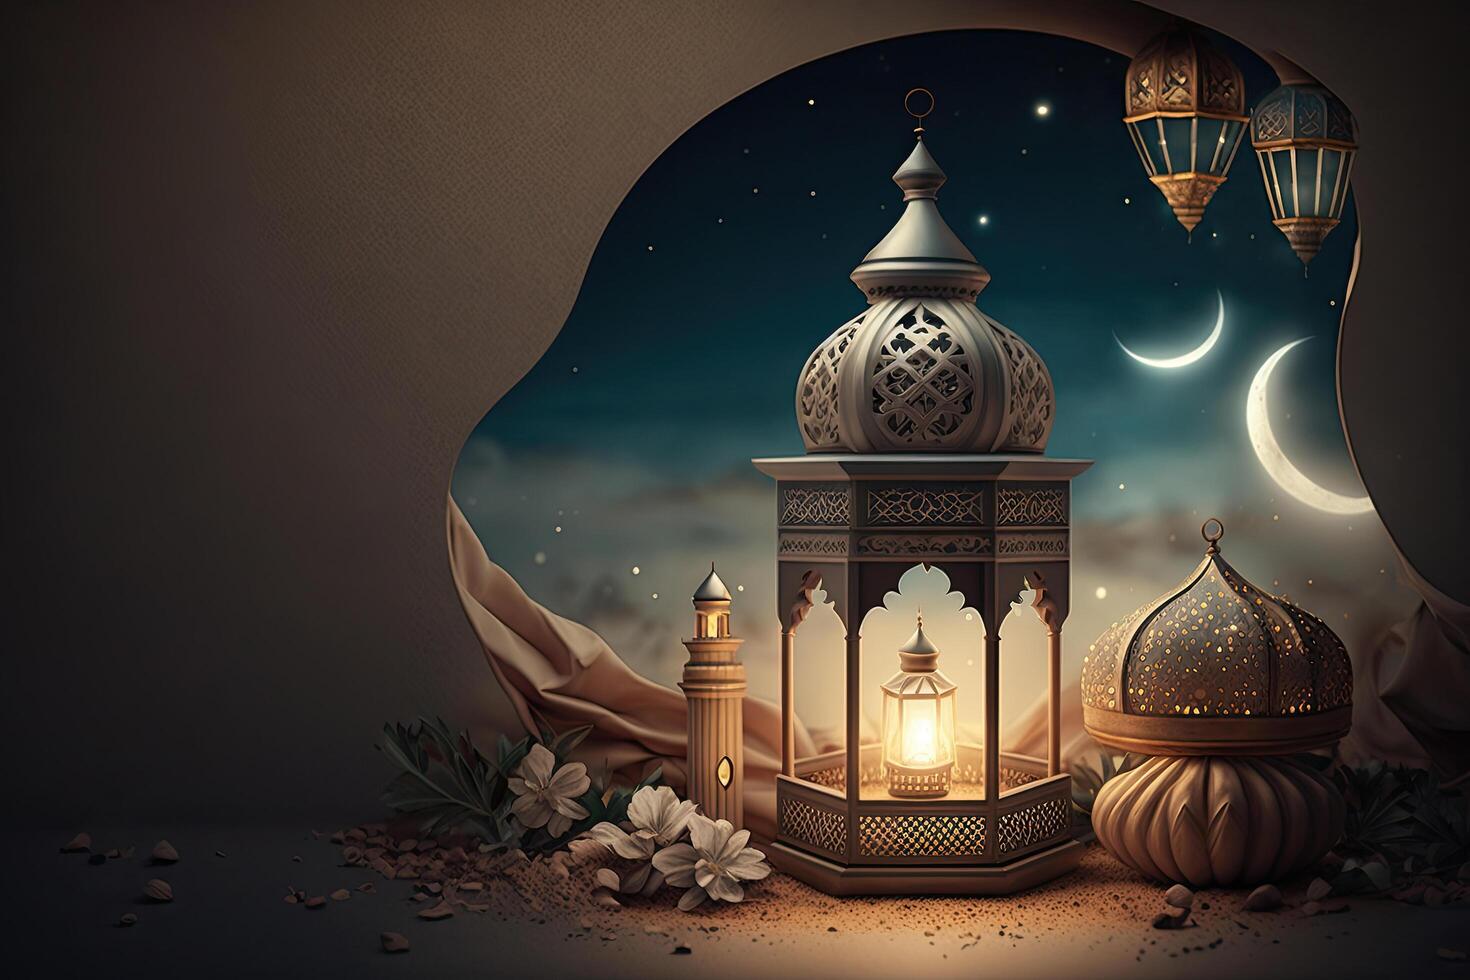 Ramadan Holiday Background. Illustration photo